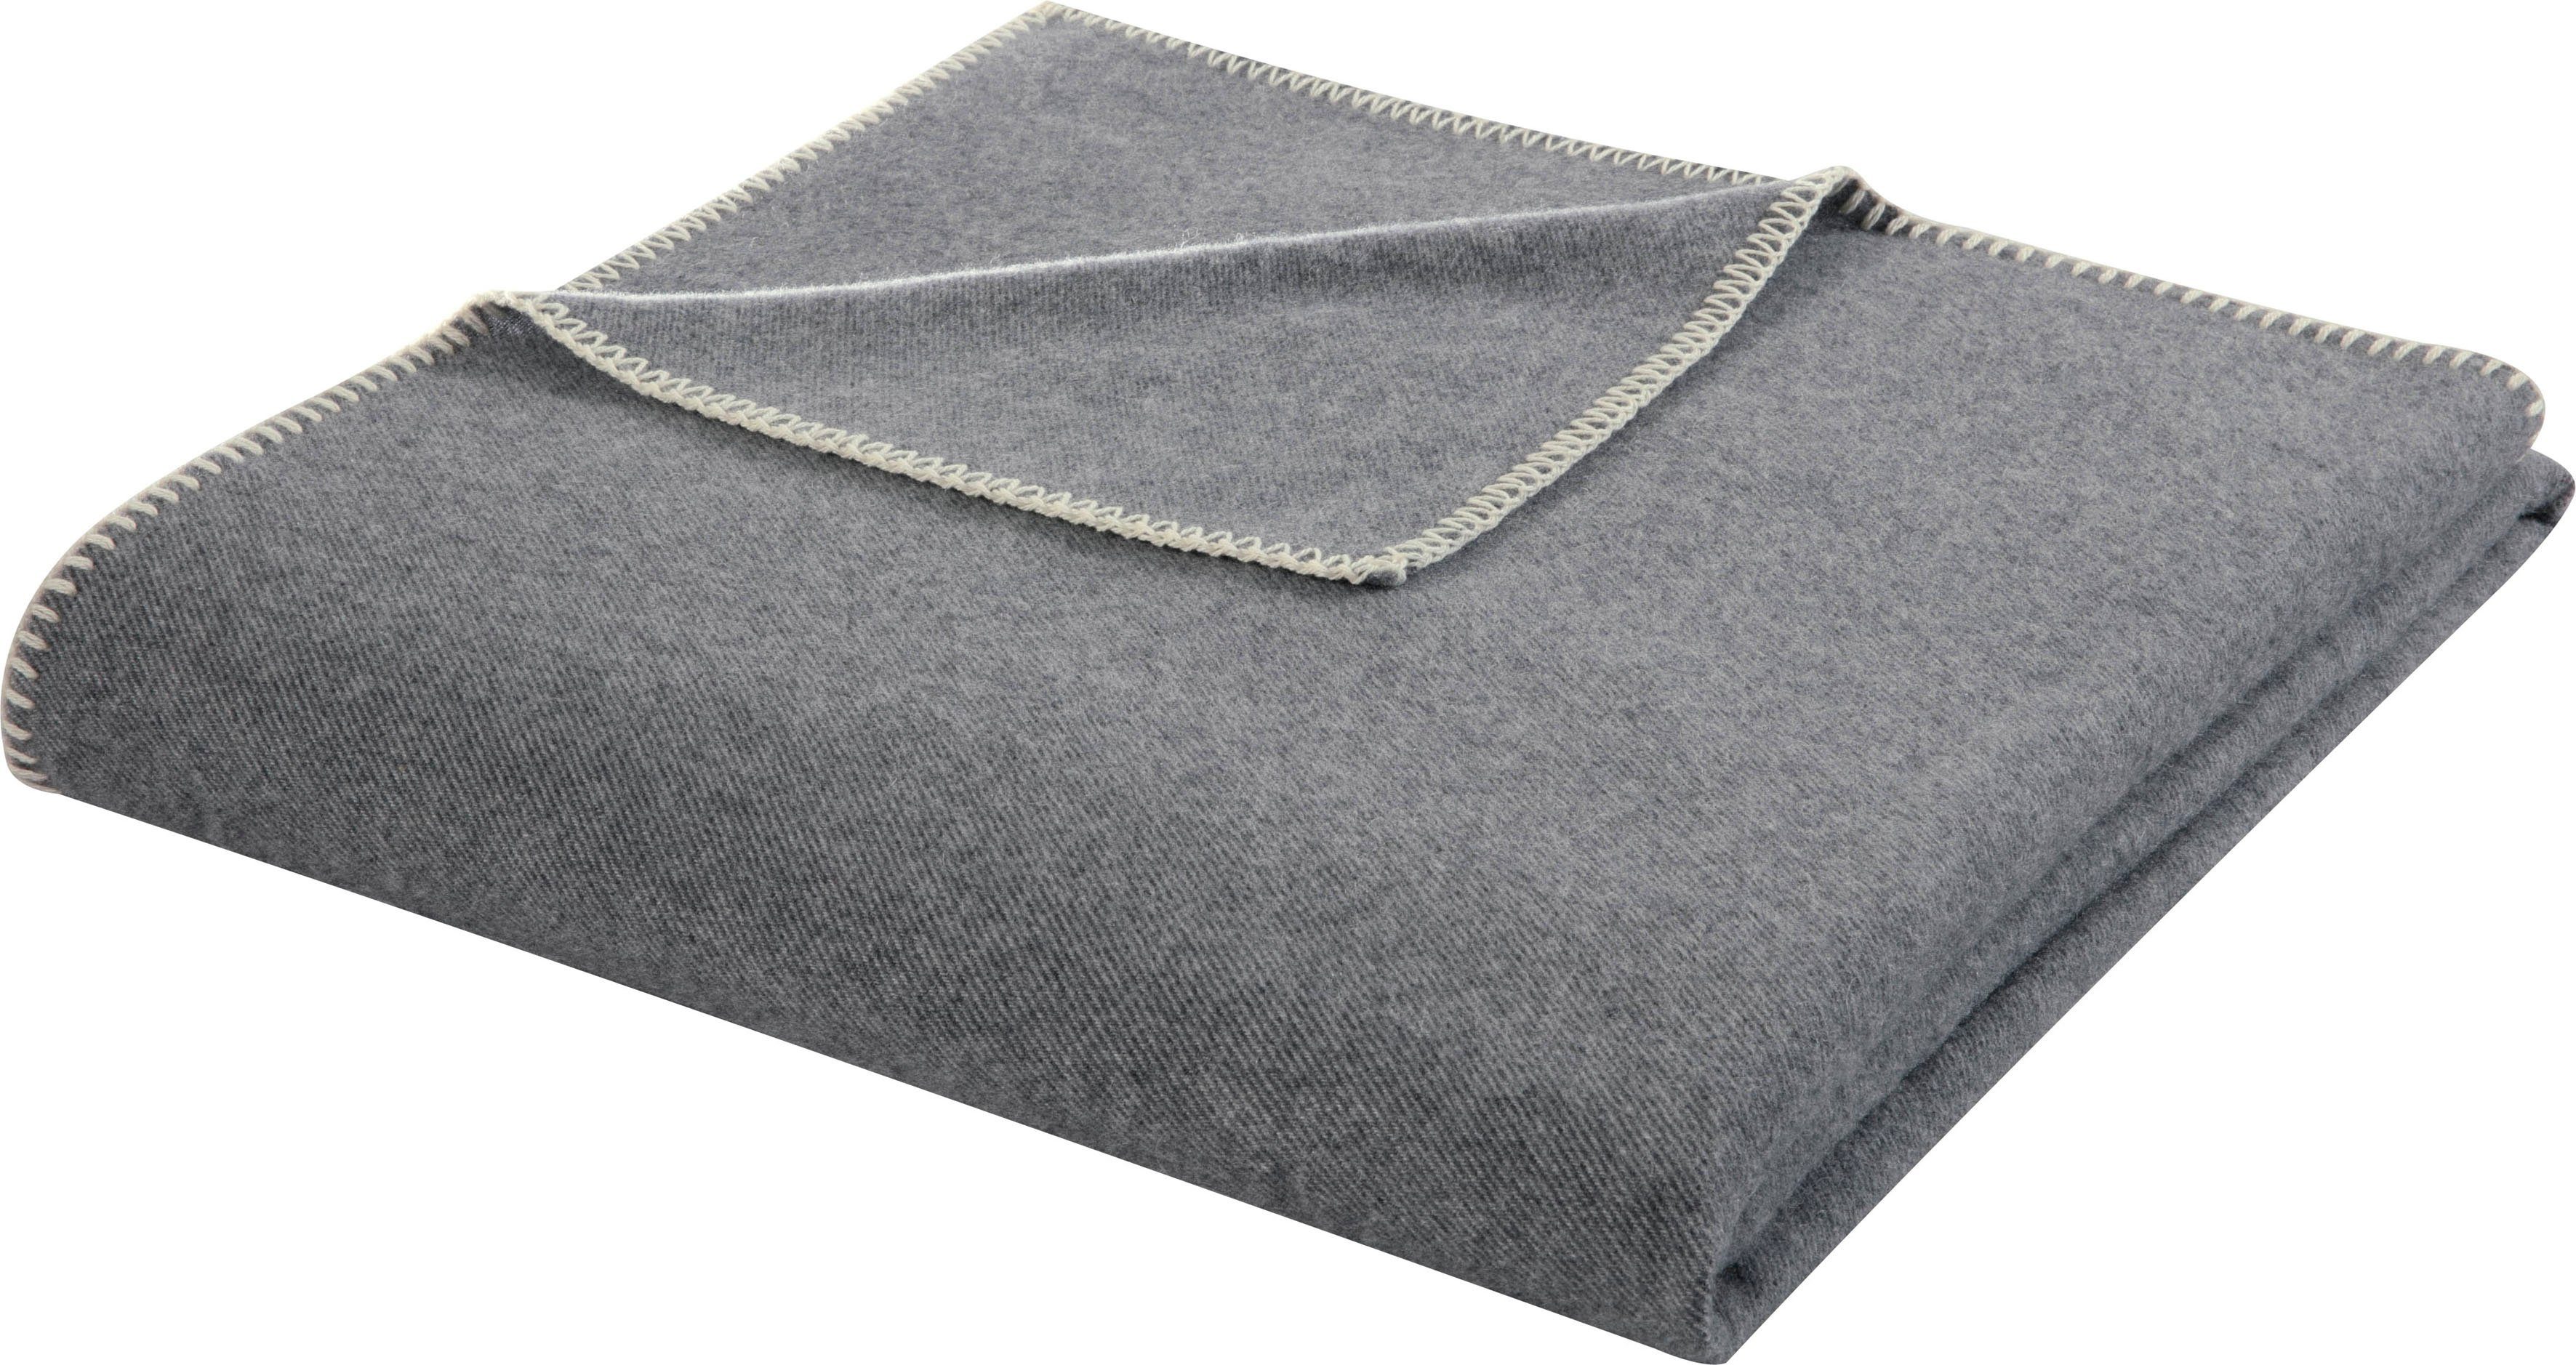 [Niedrigster Preis und höchste Qualität] Wolldecke Arezzo Stripe, Biederlack, recycelter Wolle grey mit